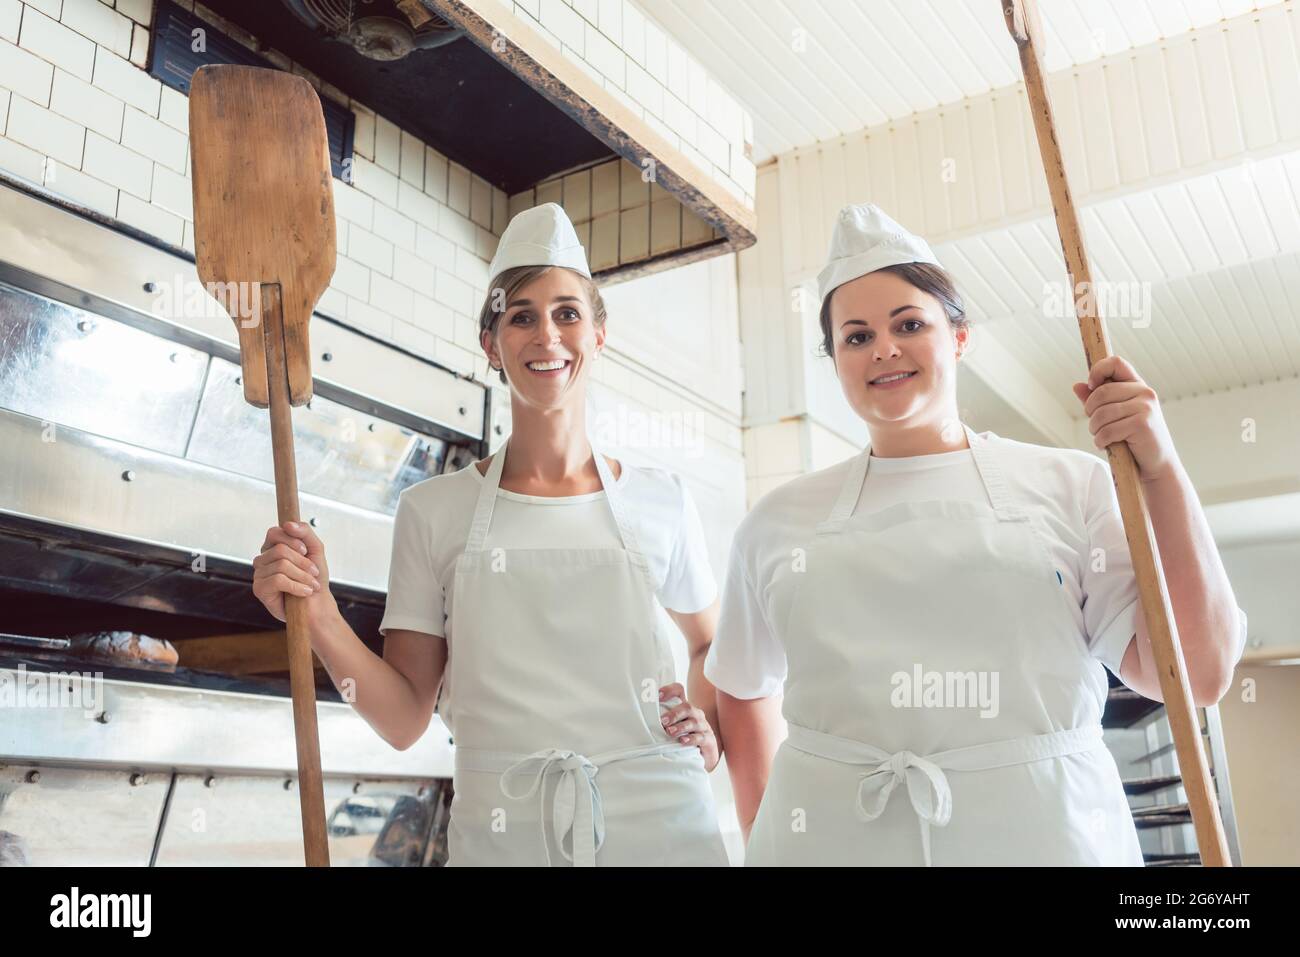 Une équipe de boulangeuses se tenant fièrement dans la boulangerie, se portant les pouces Banque D'Images